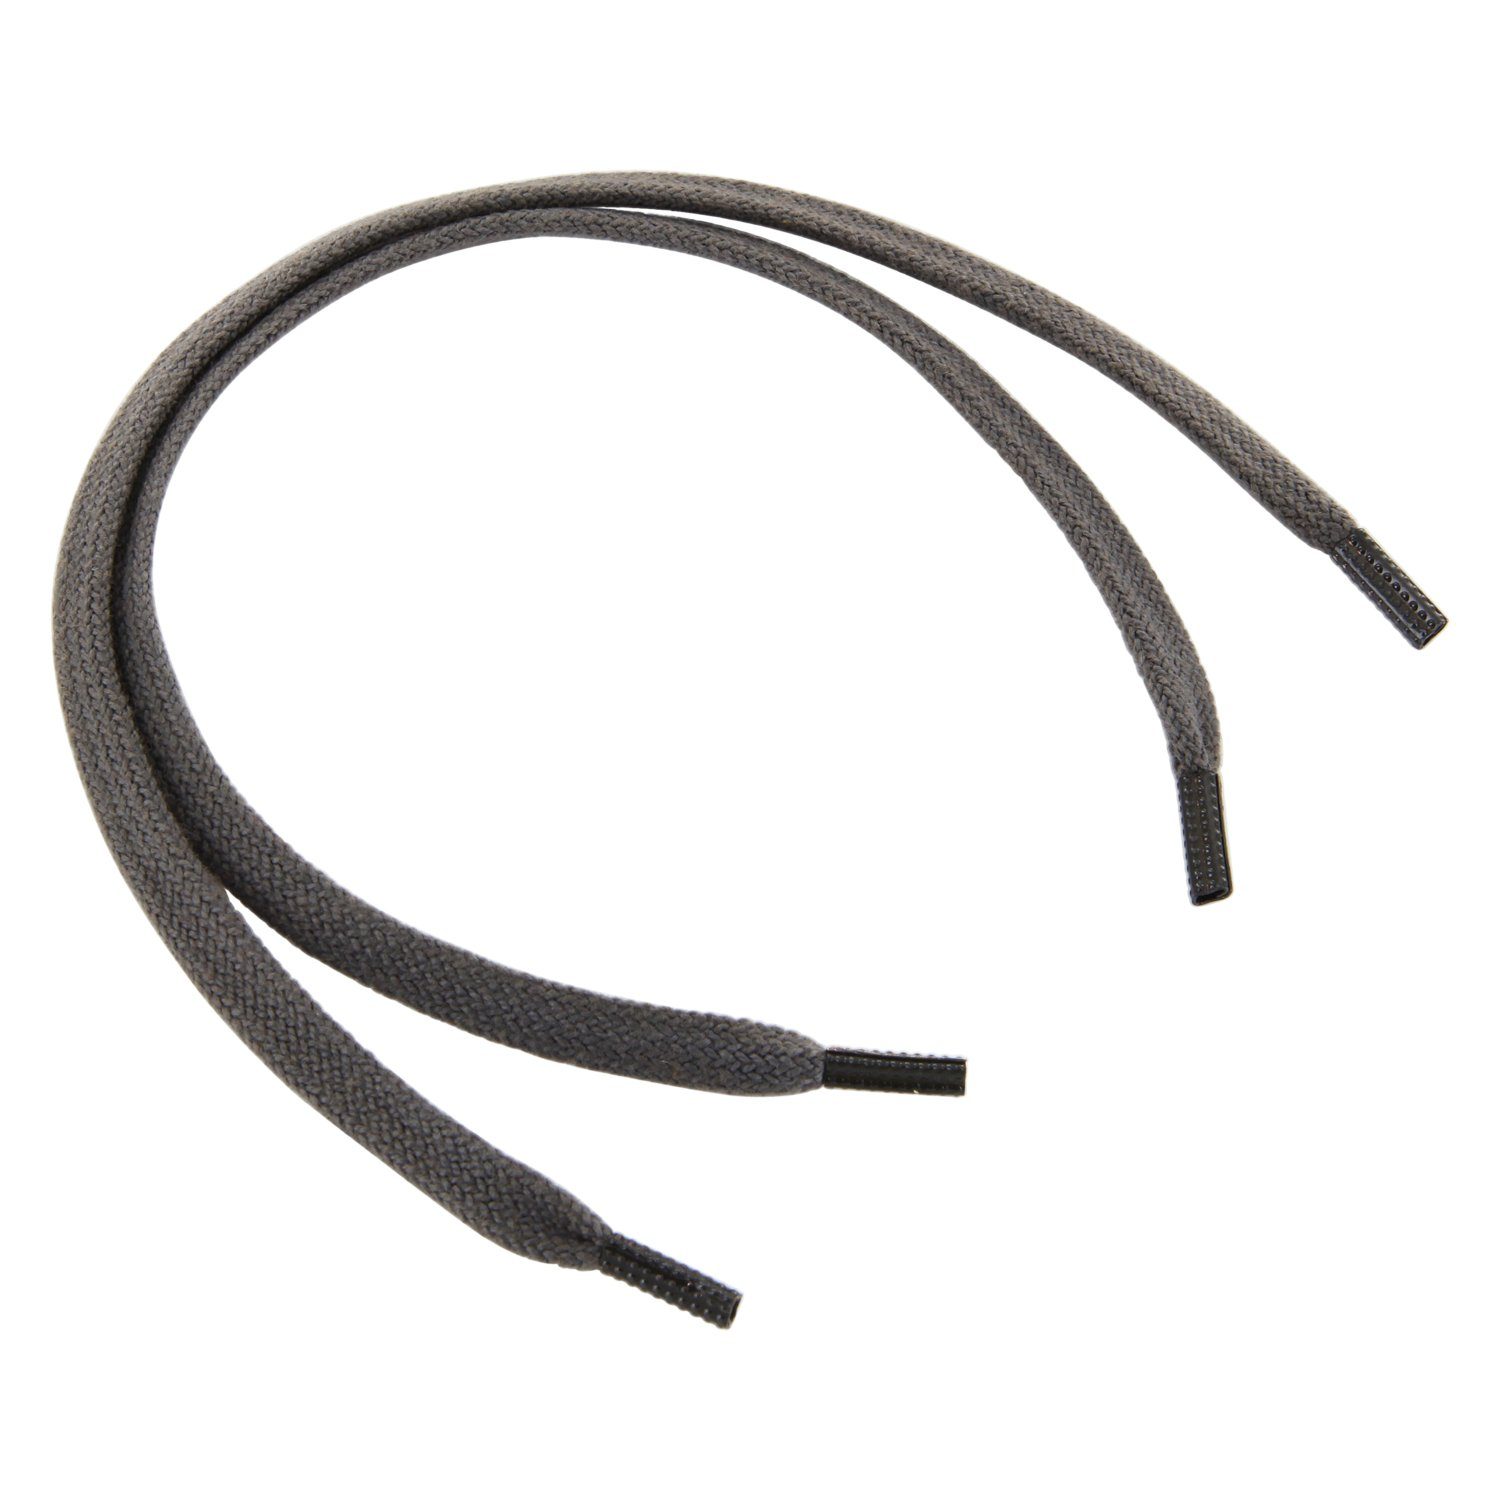 Rema Schnürsenkel Rema Schnürsenkel Dunkelgrau - flach - ca. 5 mm schmal für Sie nach Wunschlänge geschnitten und mit Metallenden versehen